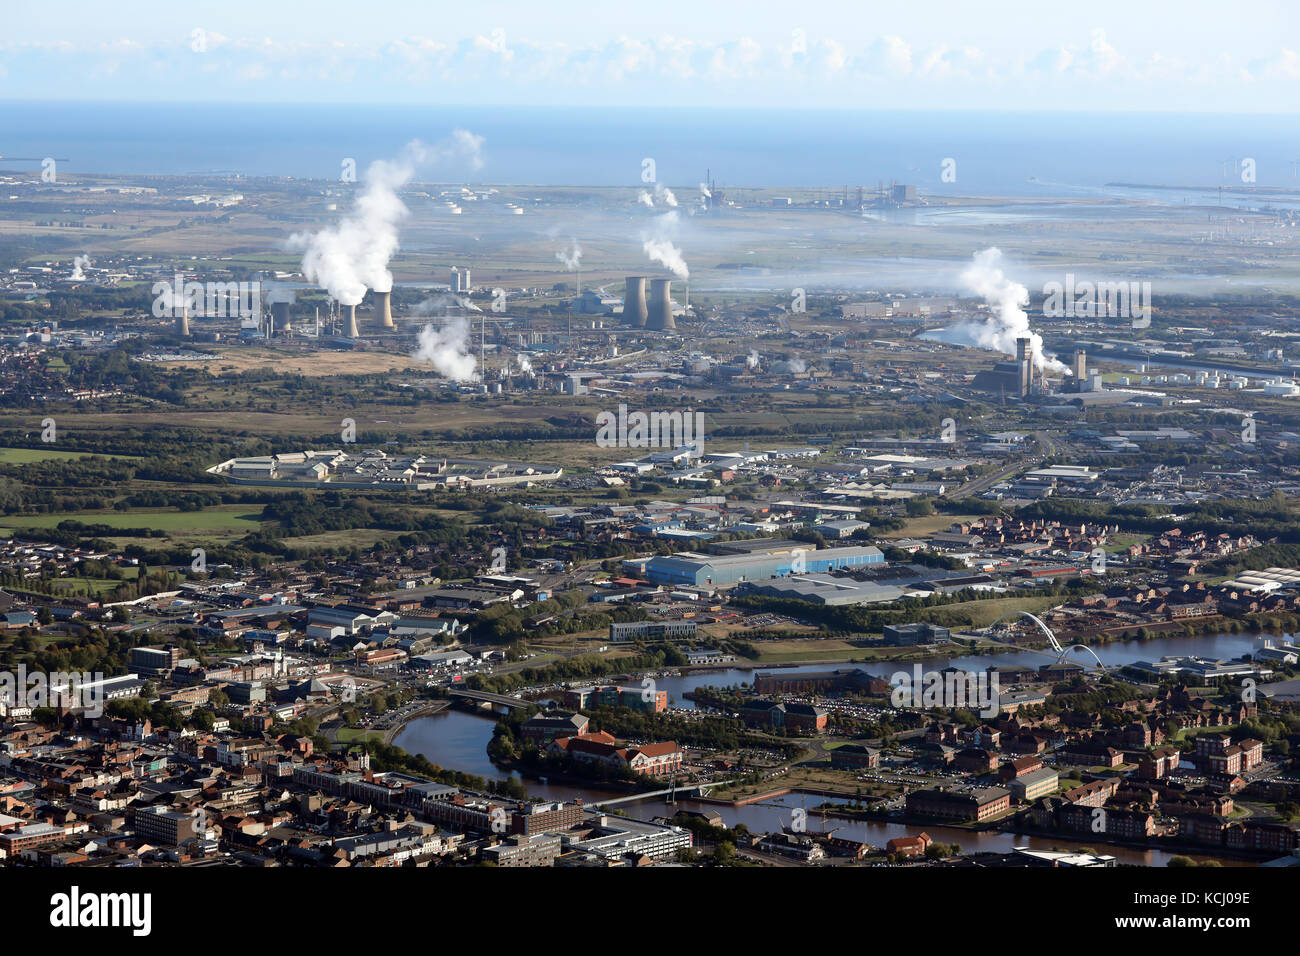 Vue aérienne d'un paysage industriel smokey Teesside, UK Banque D'Images